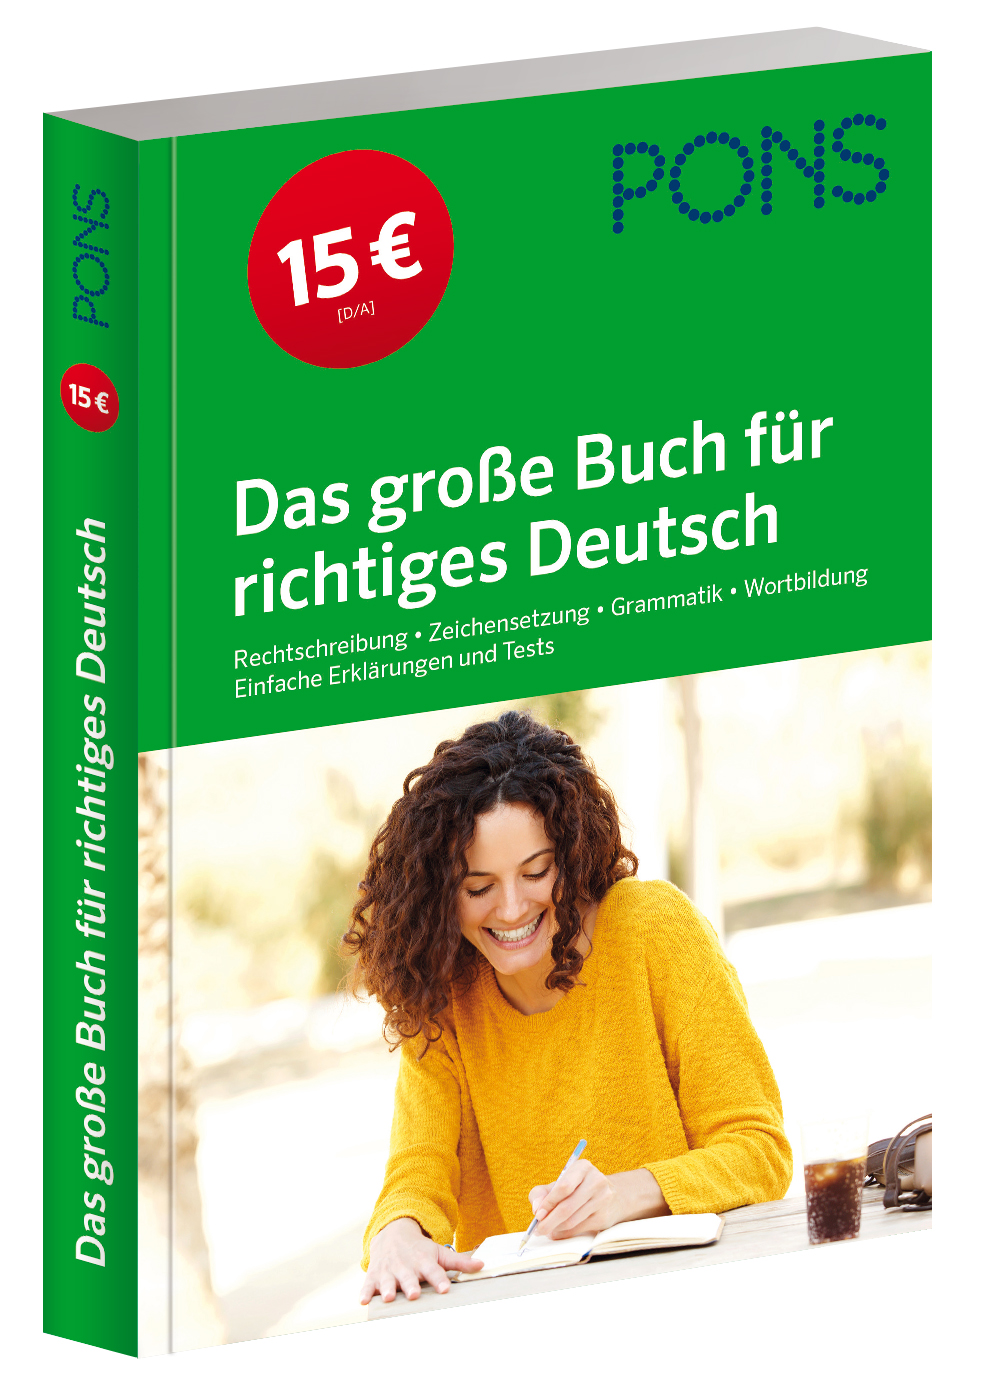 PONS Das große Buch für richtiges Deutsch